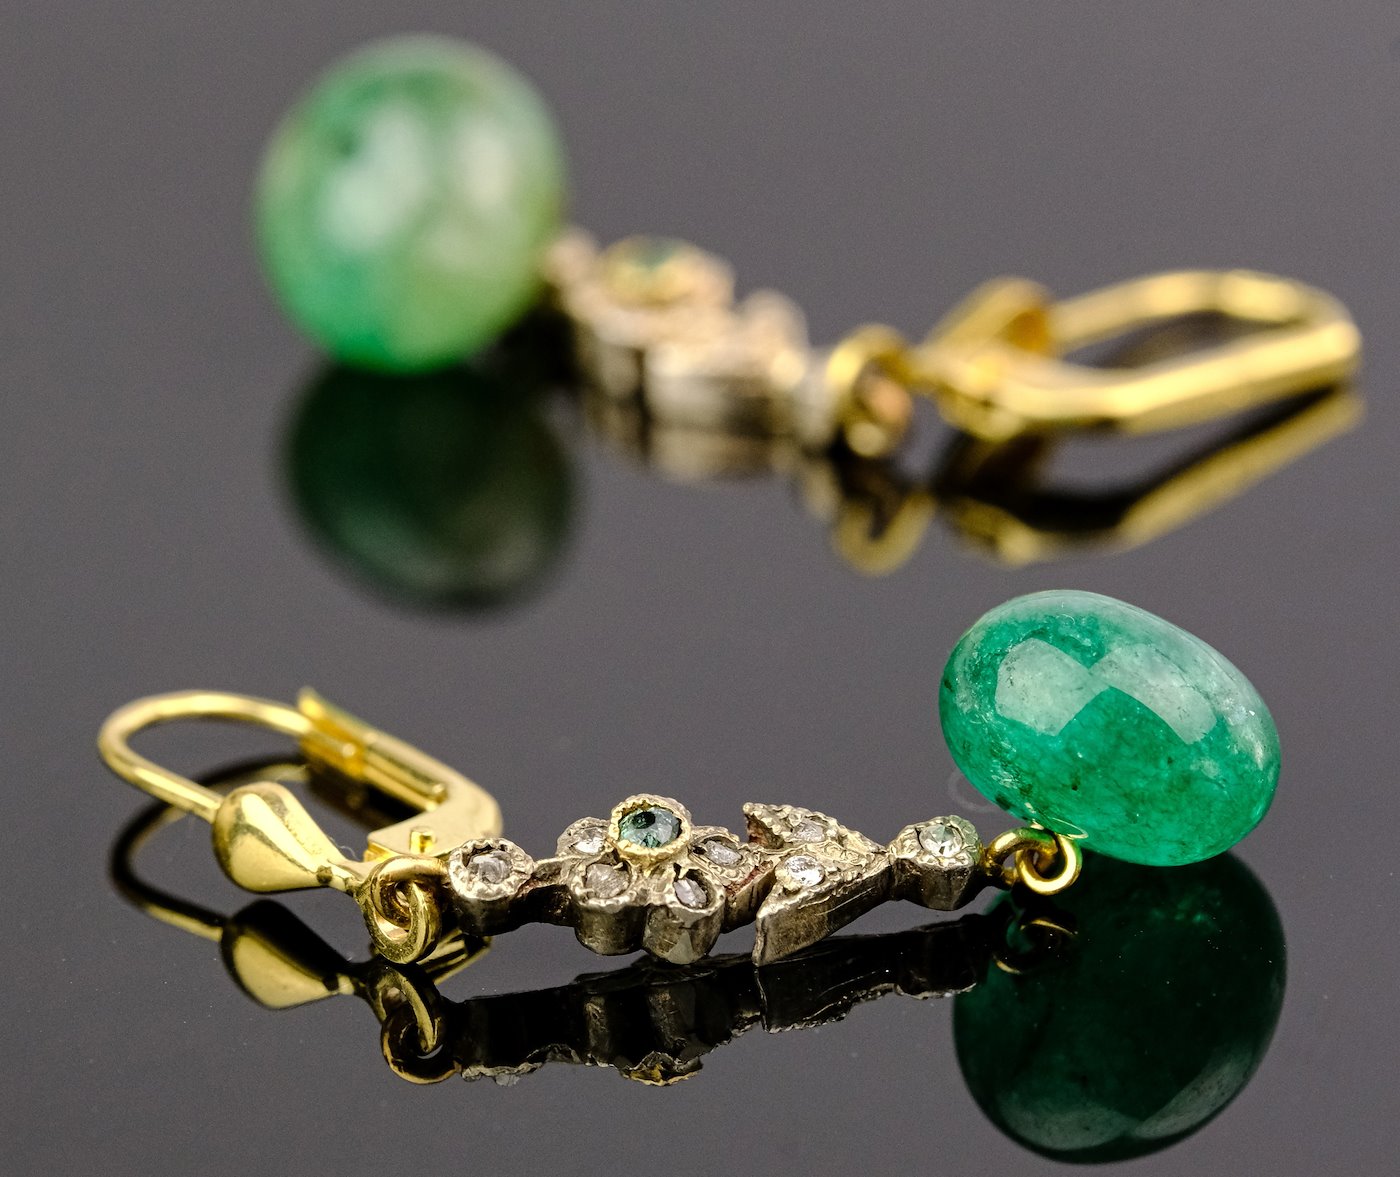 .. - Náušnice s diamanty a smaragdy, zlato 585/1000, značeno platnou puncovní značkou "labuť", hrubá hmotnost 4,05 g